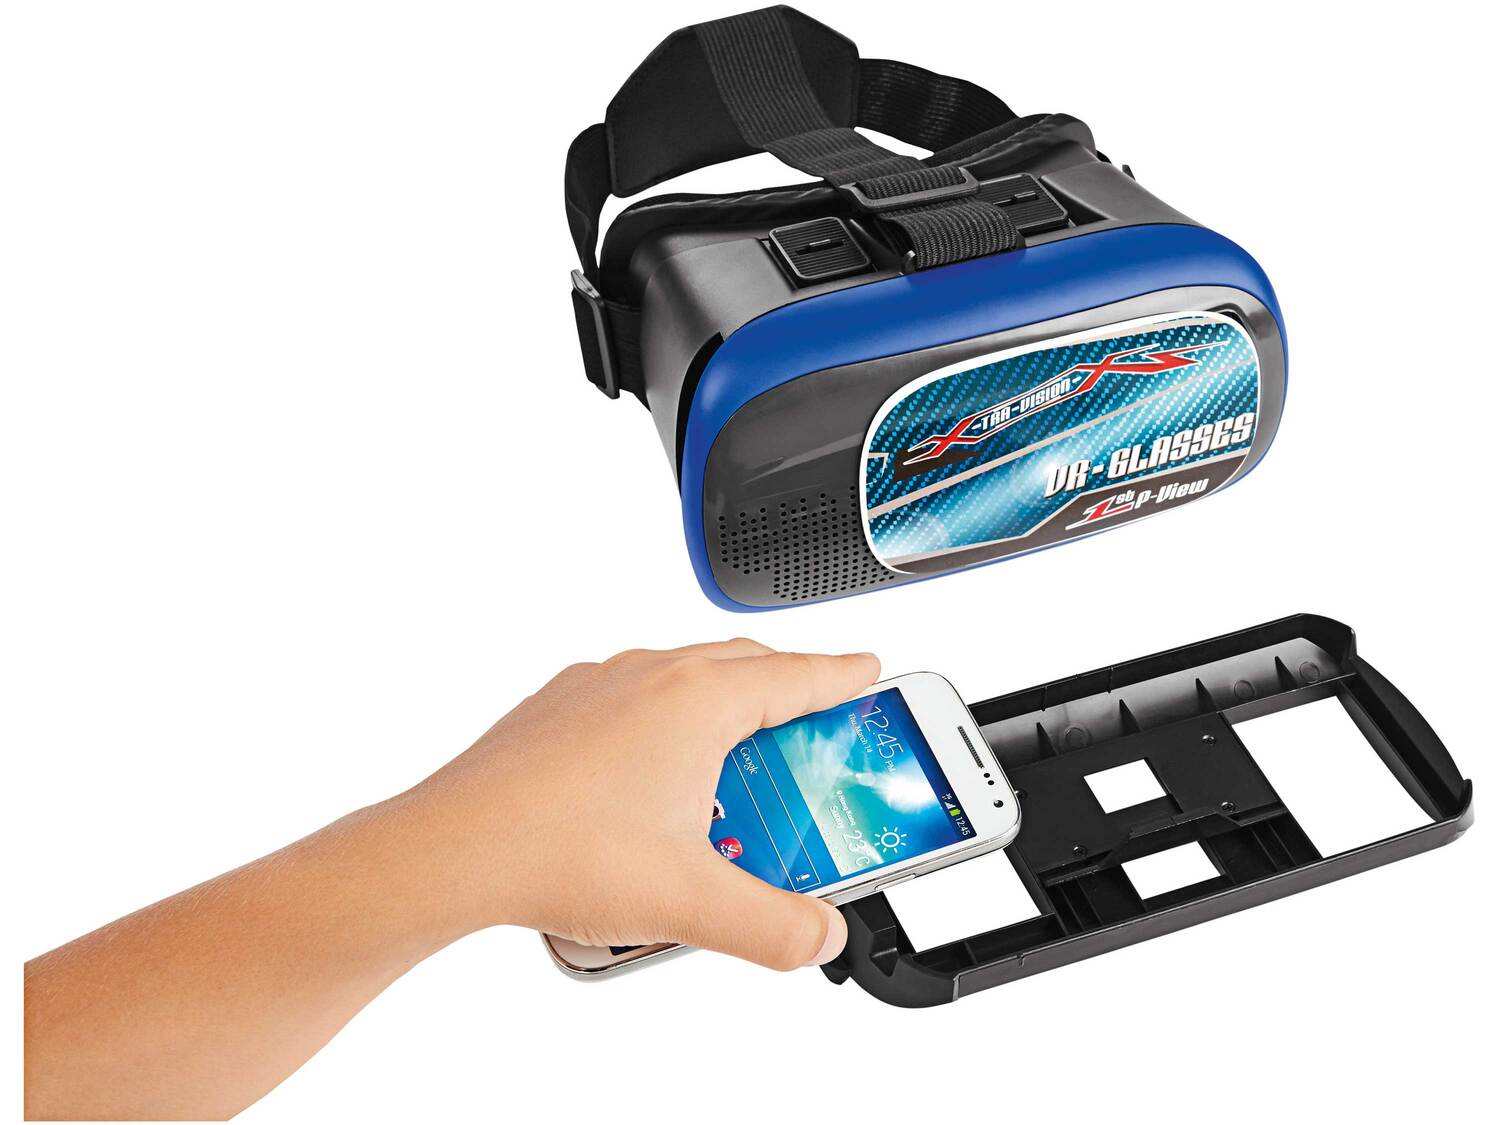 Samochód z kamerą Wi-Fi i okularami VR , cena 99,00 PLN 
- wymiary: ok. 29,9 ...